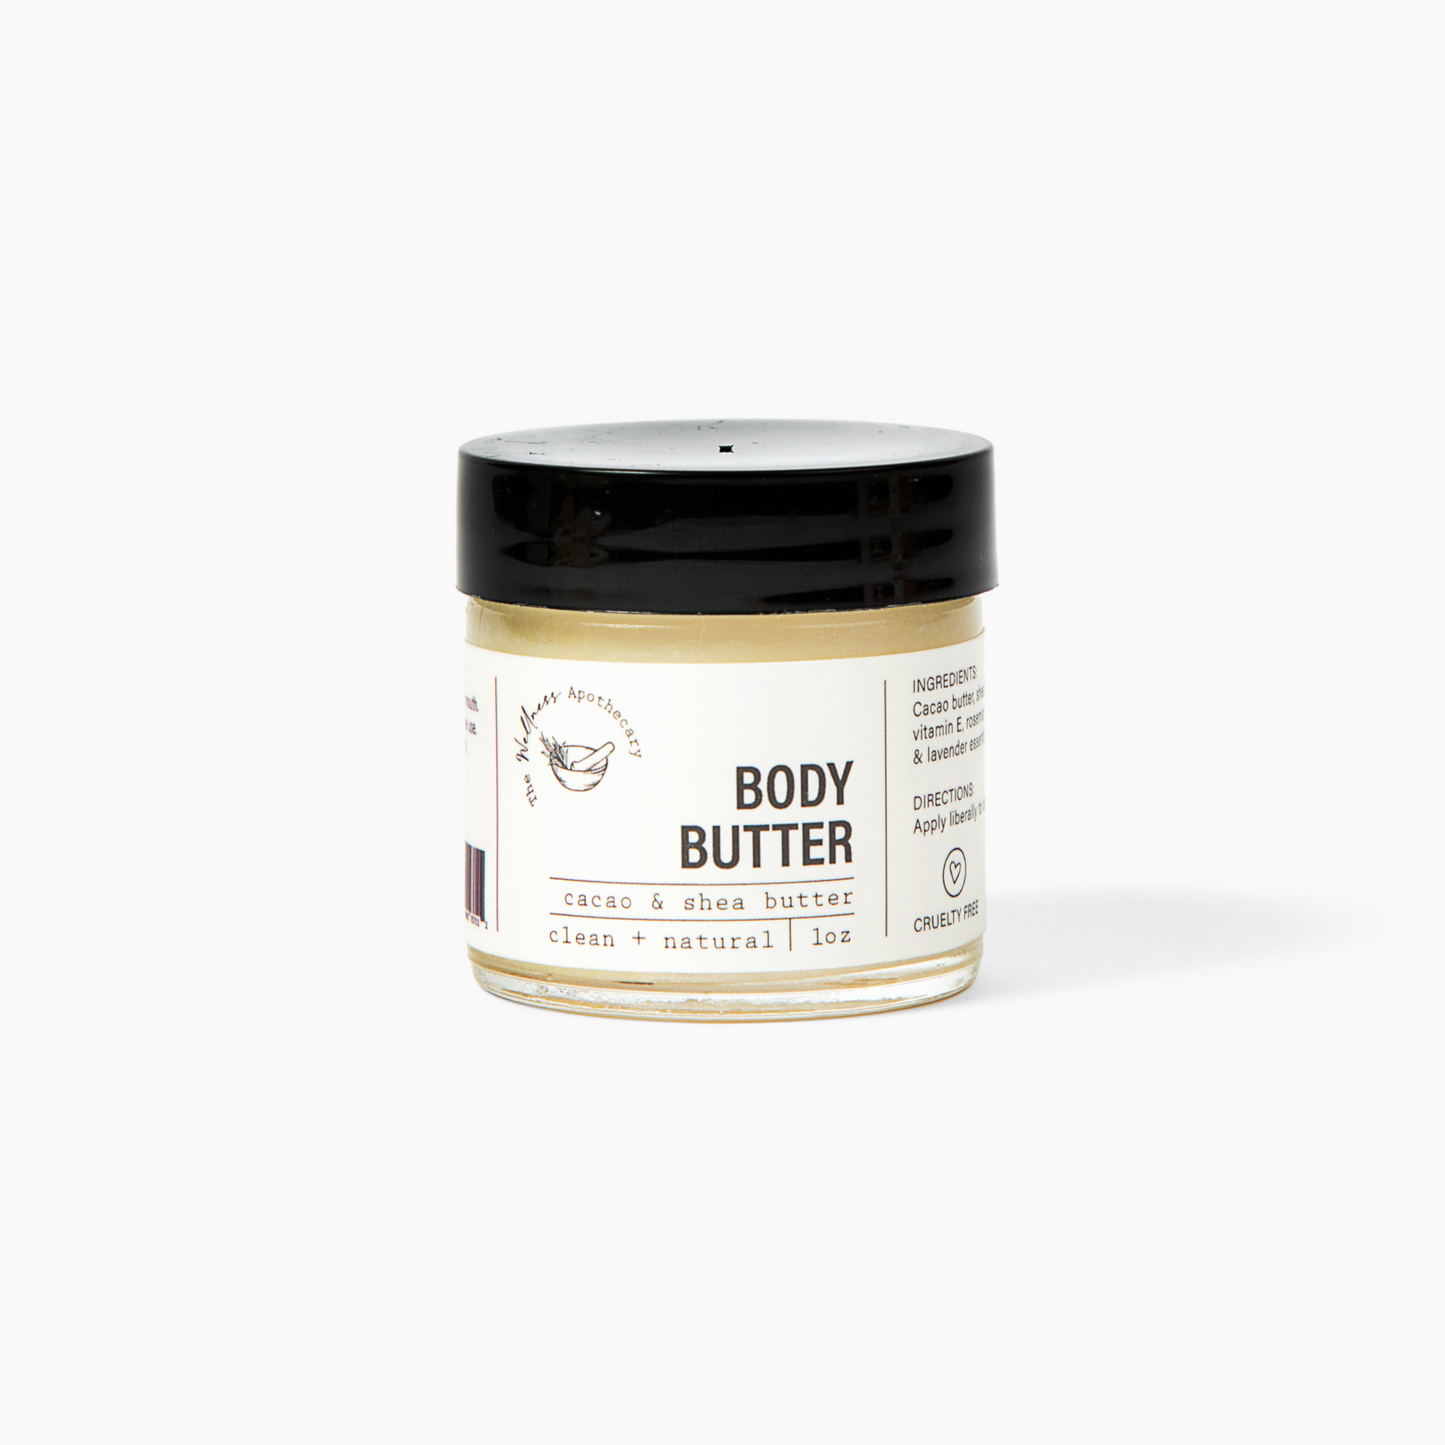 Body Butter